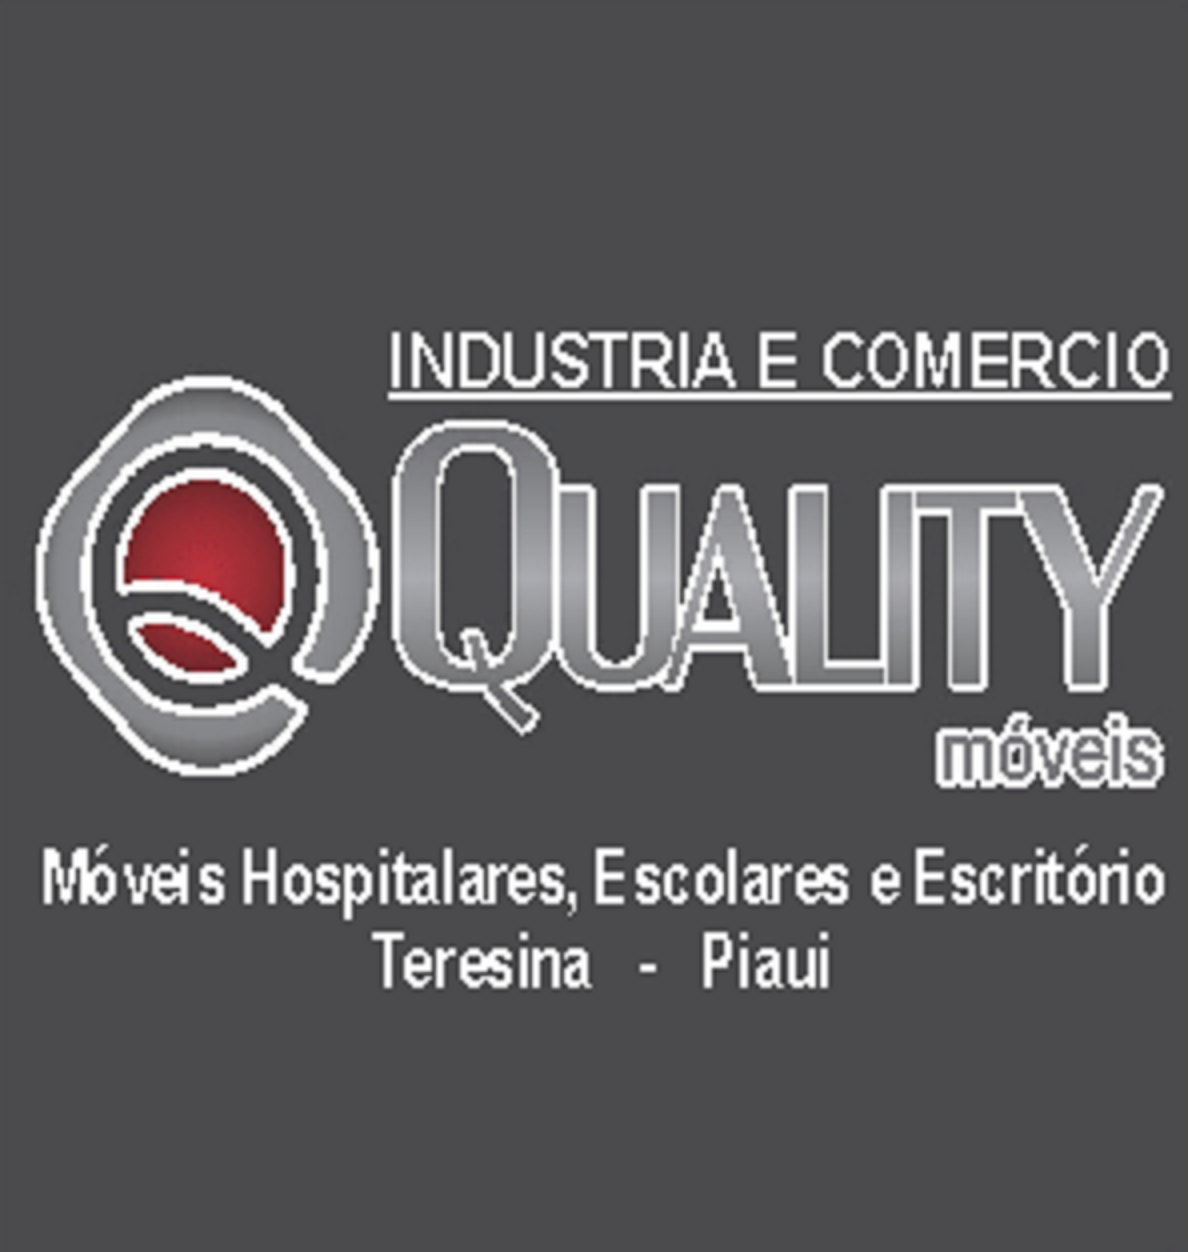 Quality Moveis - Orçamento Distribuidores - Hospitalar